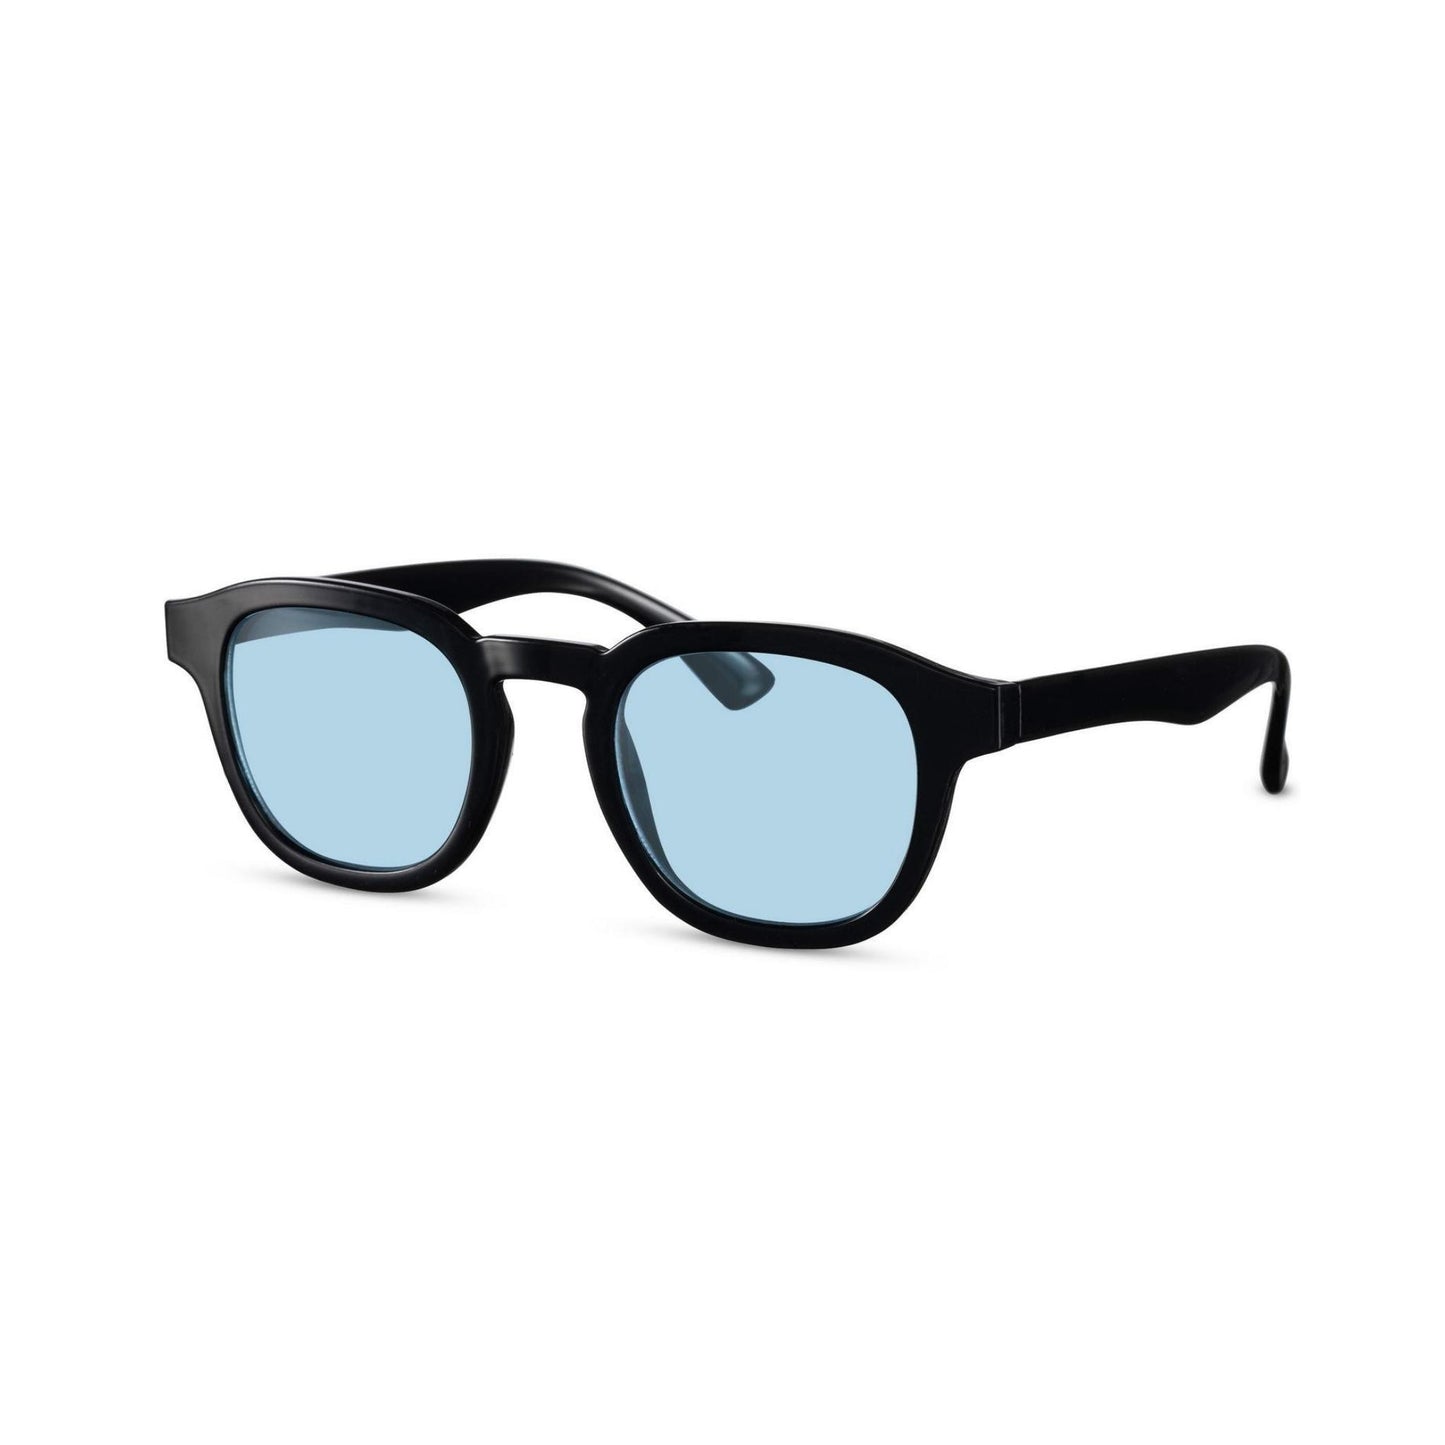 Γυαλιά ηλίου Montreal της Exposure Sunglasses με προστασία UV400 με μαύρο σκελετό και μπλε φακό.Πλάγια προβολή.